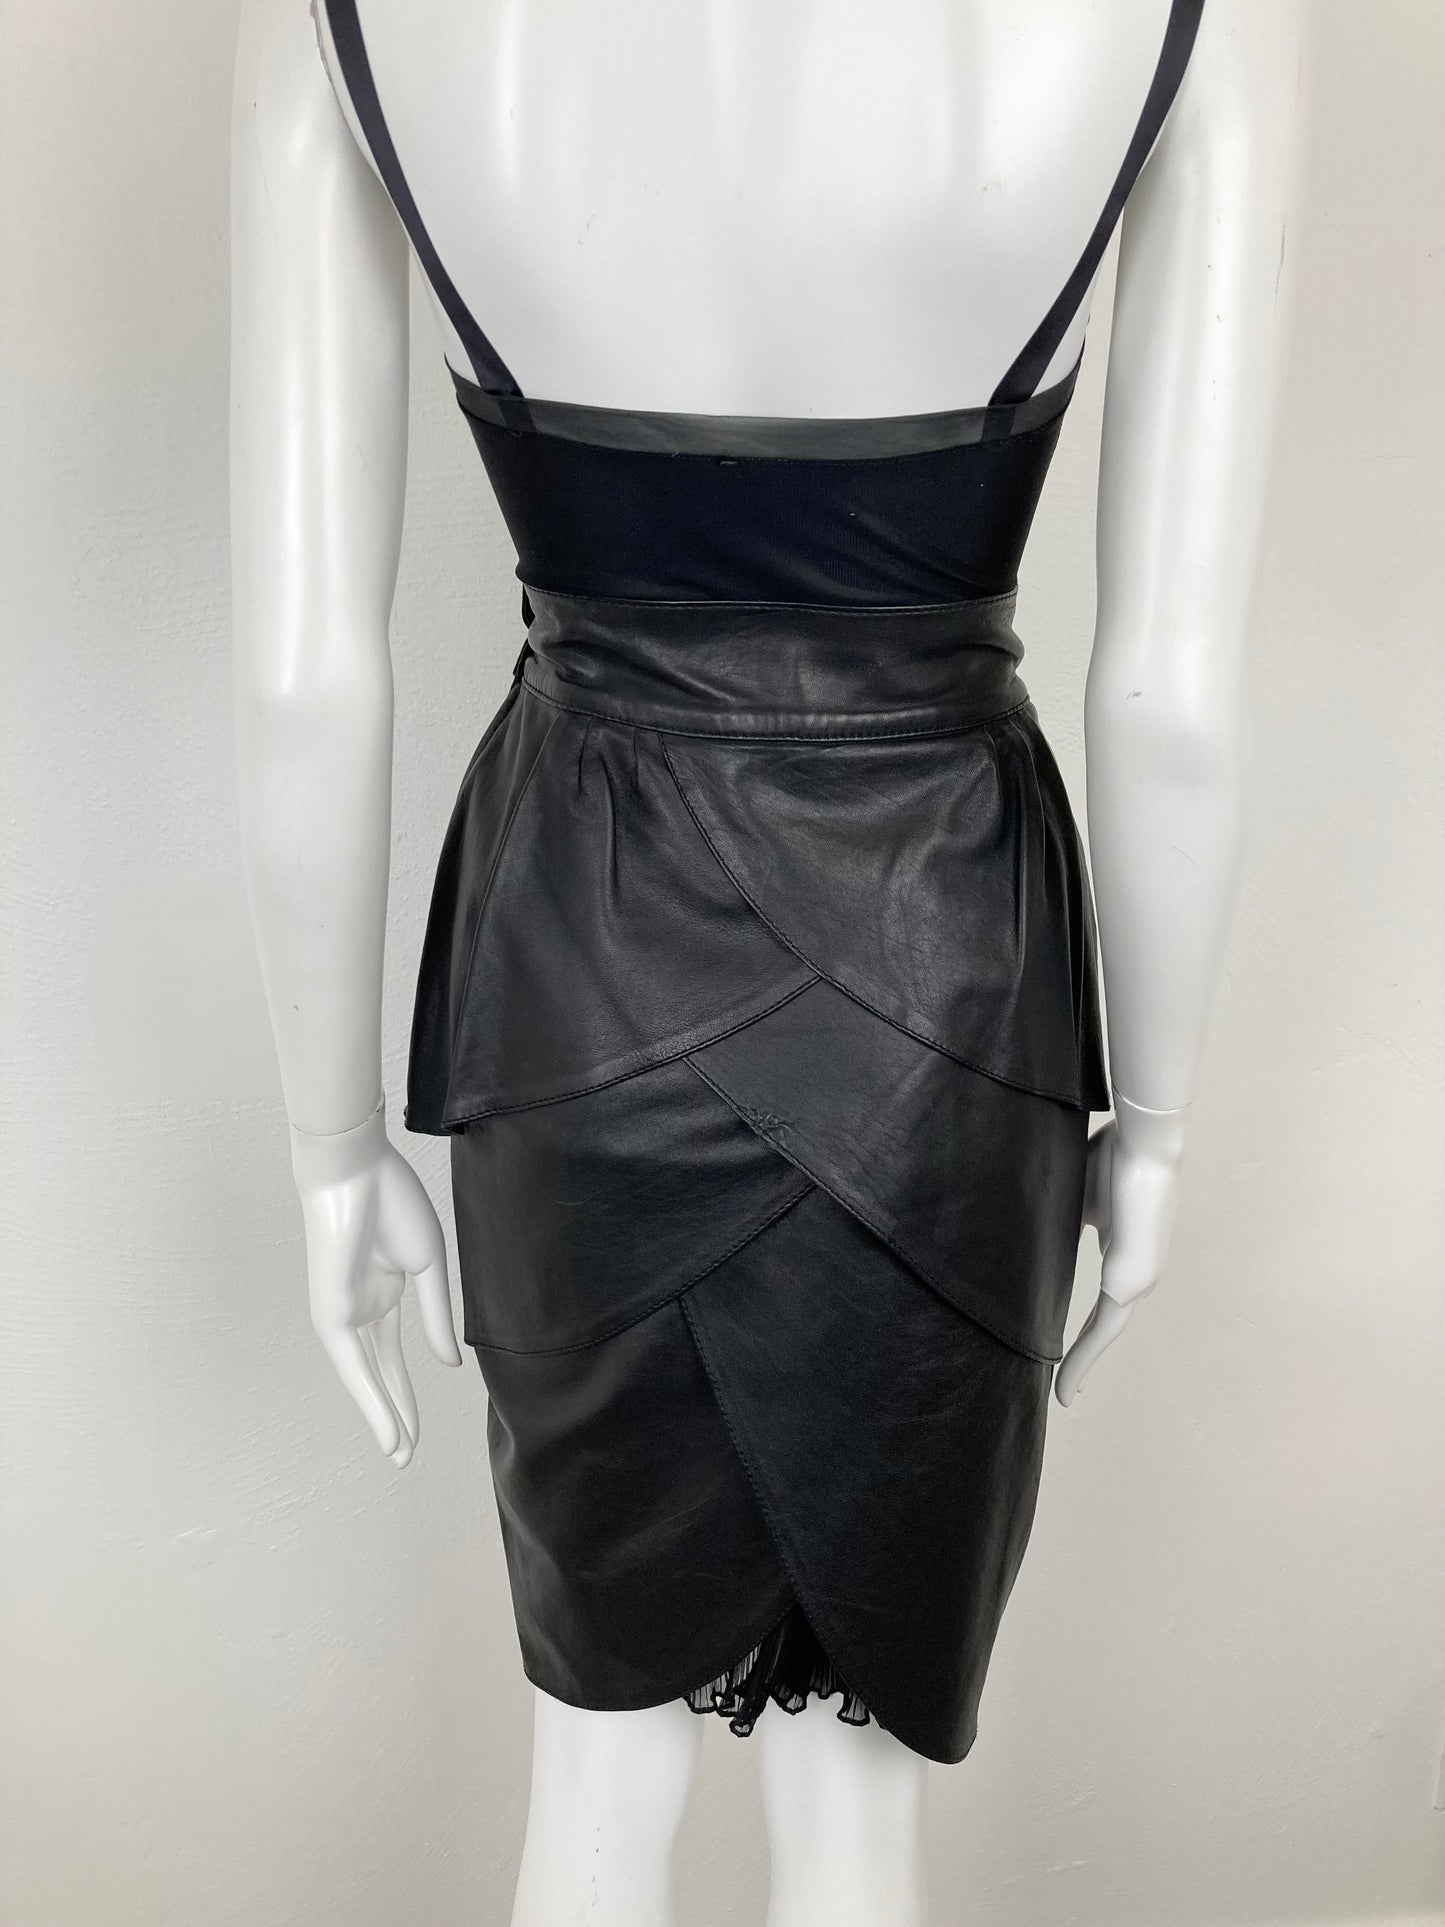 80s Black Leather Petal Tiered Skirt, Italian Leather Skirt, Funky Hight Waisted Black Leather Skirt